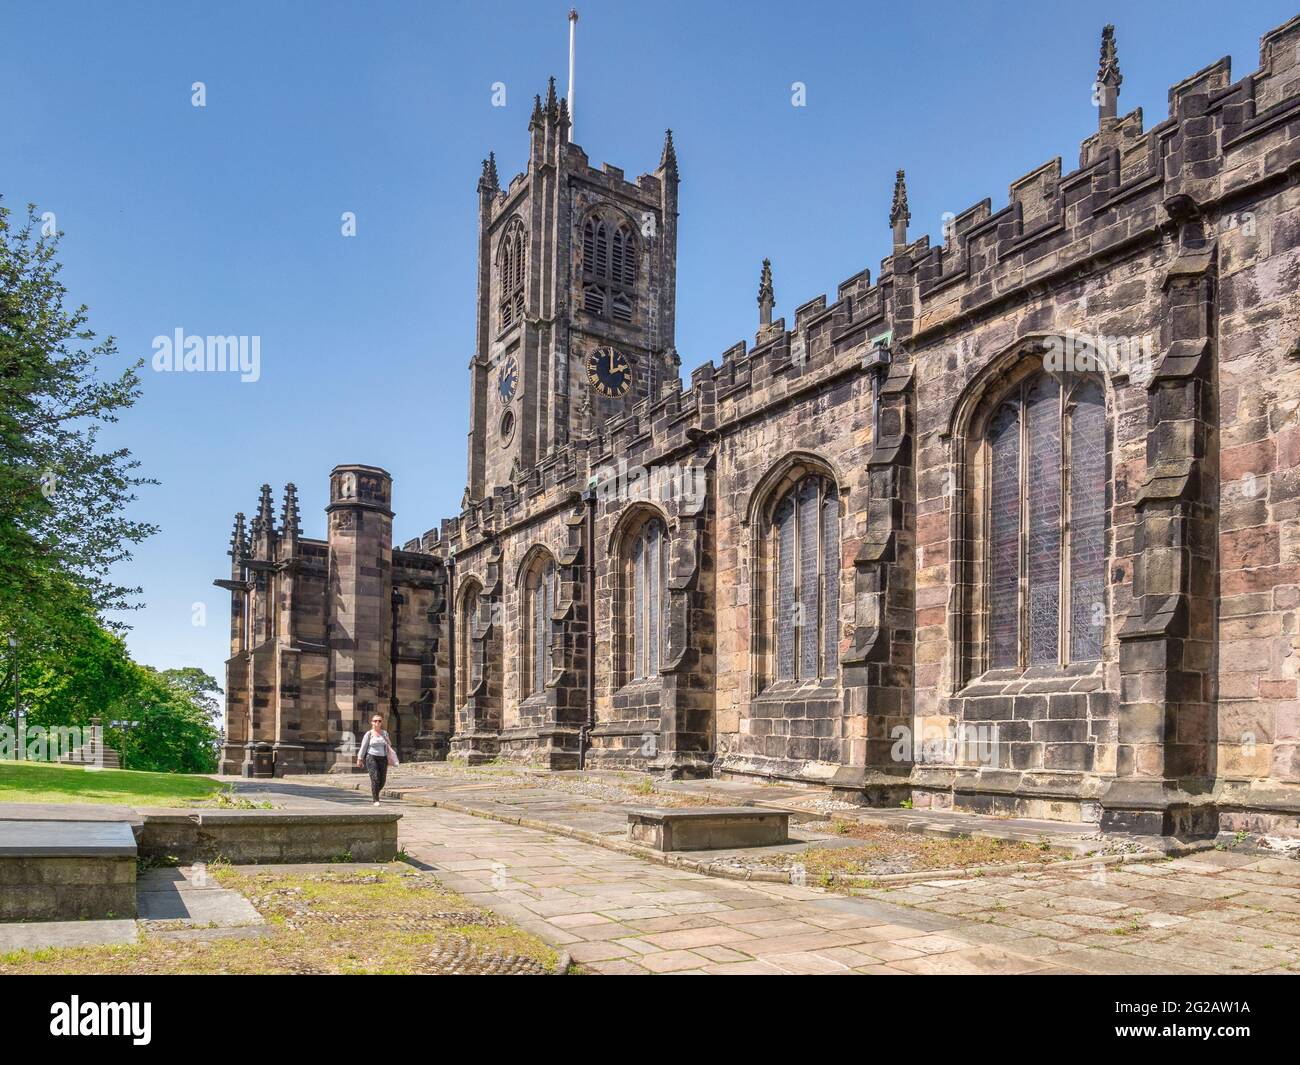 12 juillet 2020: Lancaster, Royaume-Uni - l'église du Prieuré de Sainte Marie en été, femme marchant à côté. Banque D'Images